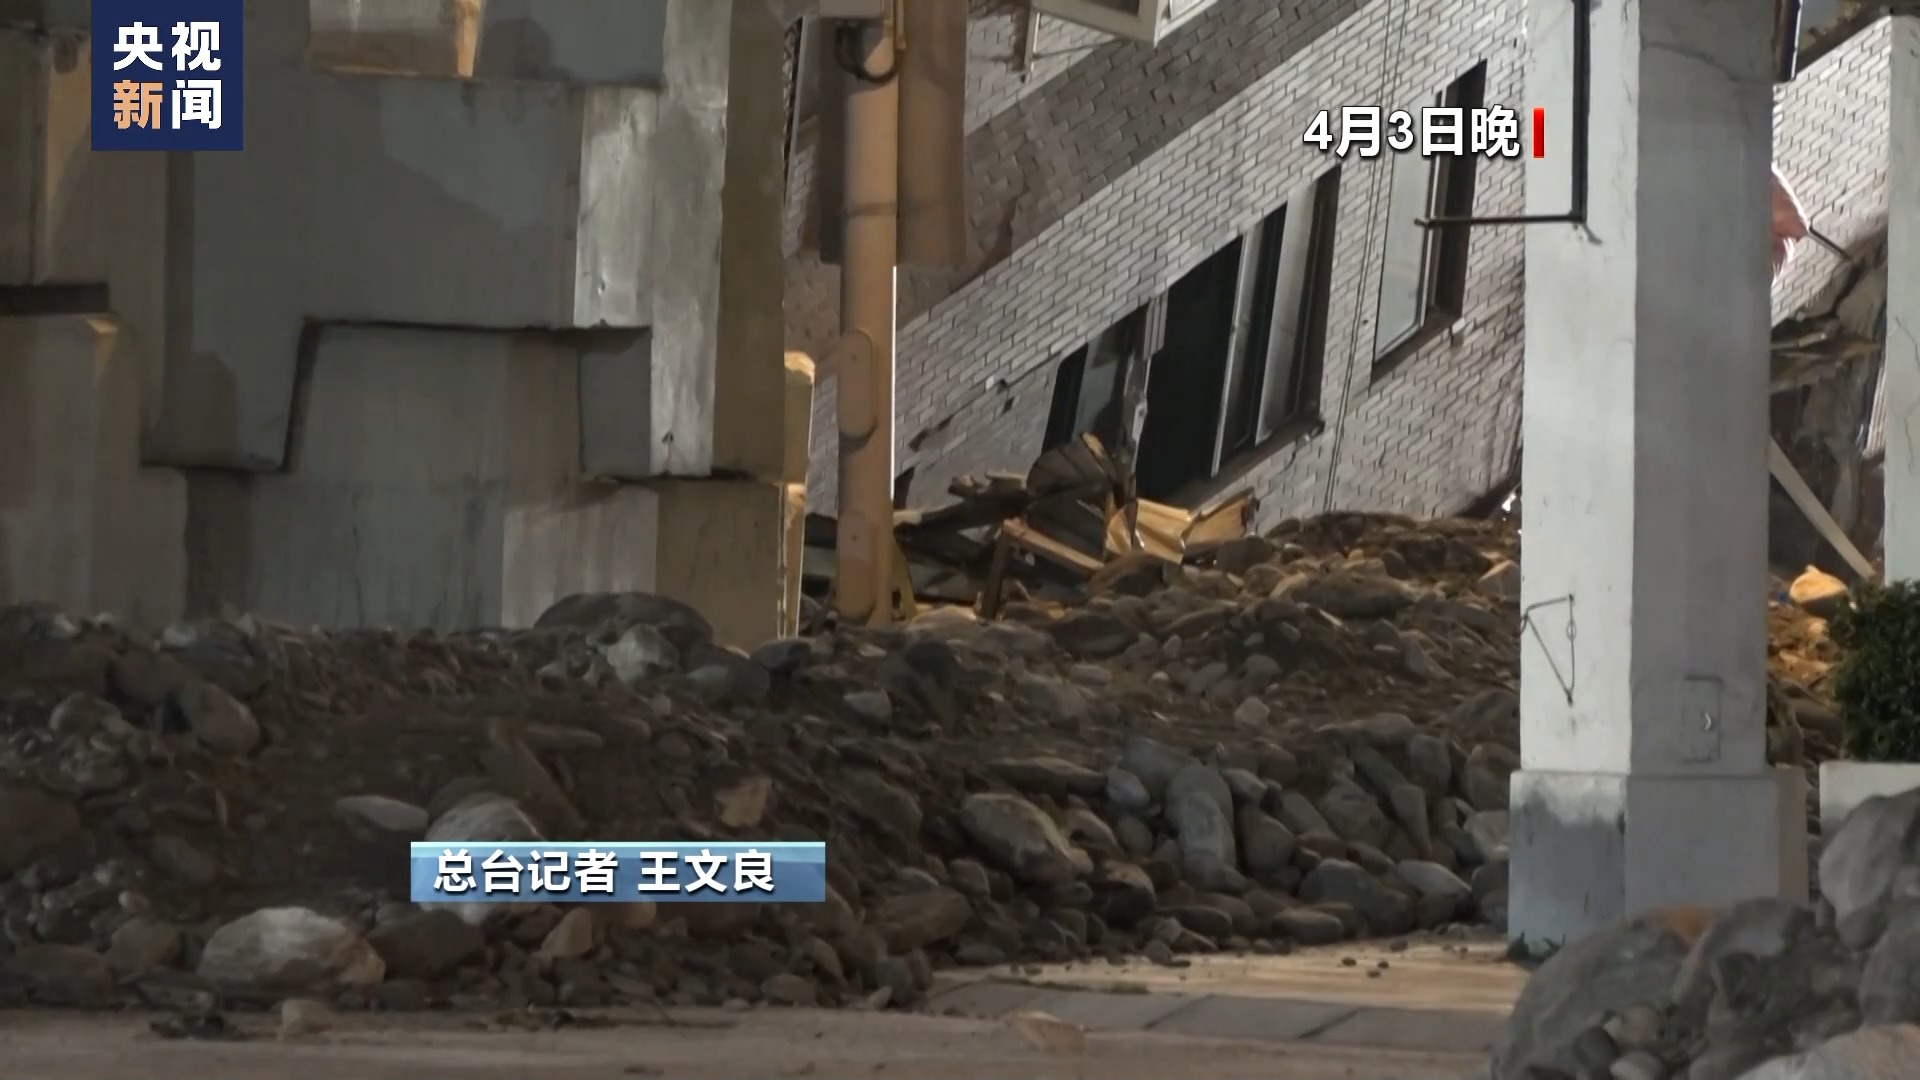 台湾花莲强震中受损要紧的天王星大楼搜救举动根底已矣